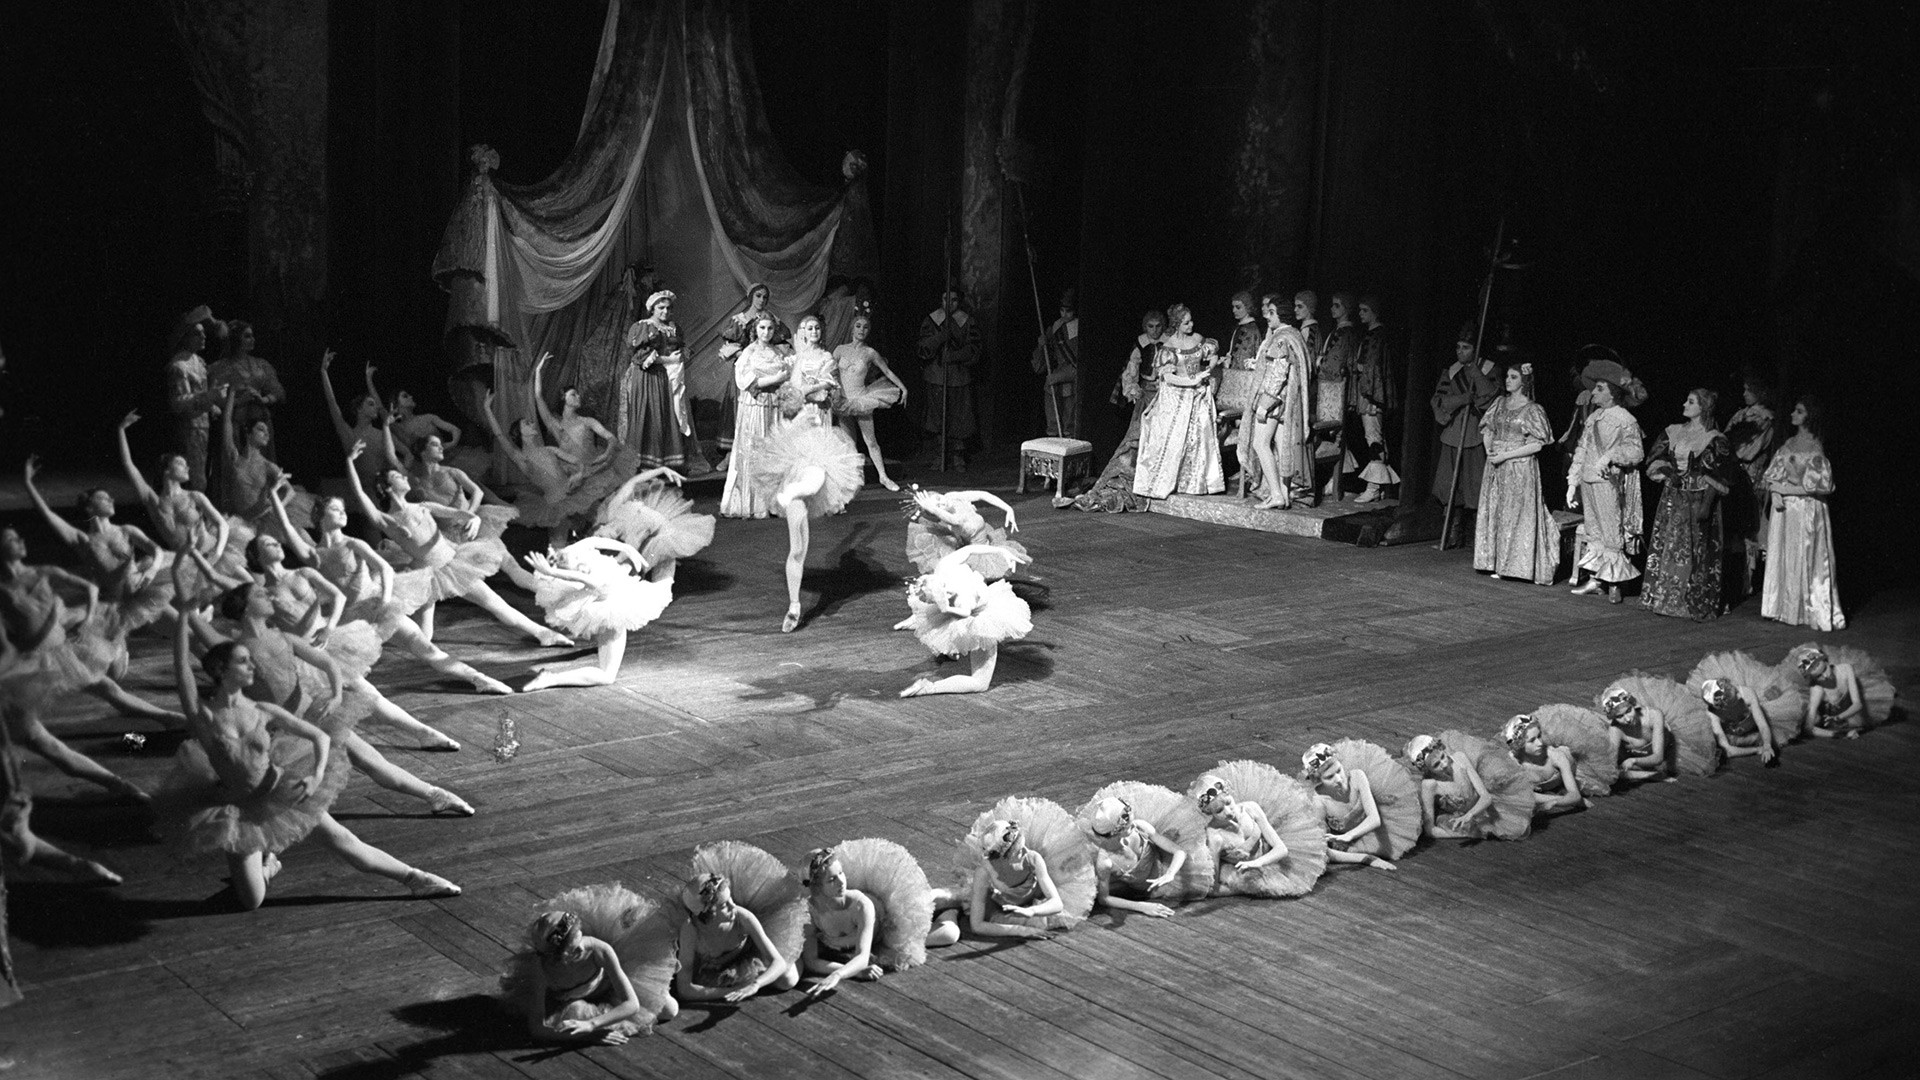 балет спящая красавица в мариинском театре